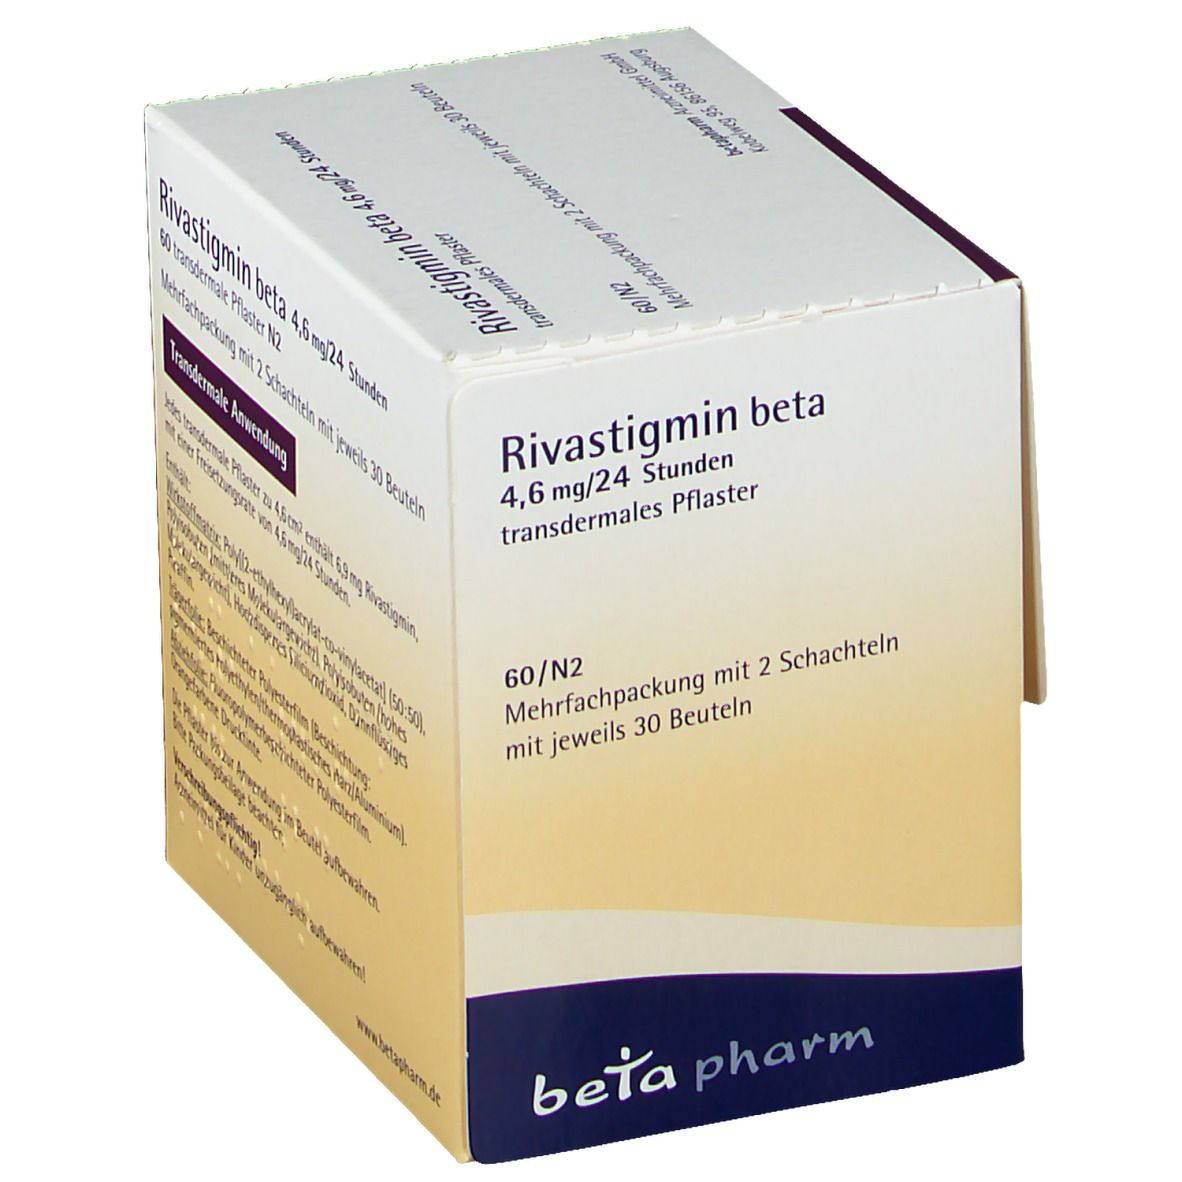 Rivastigmin beta 4,6 mg/24 Stunden